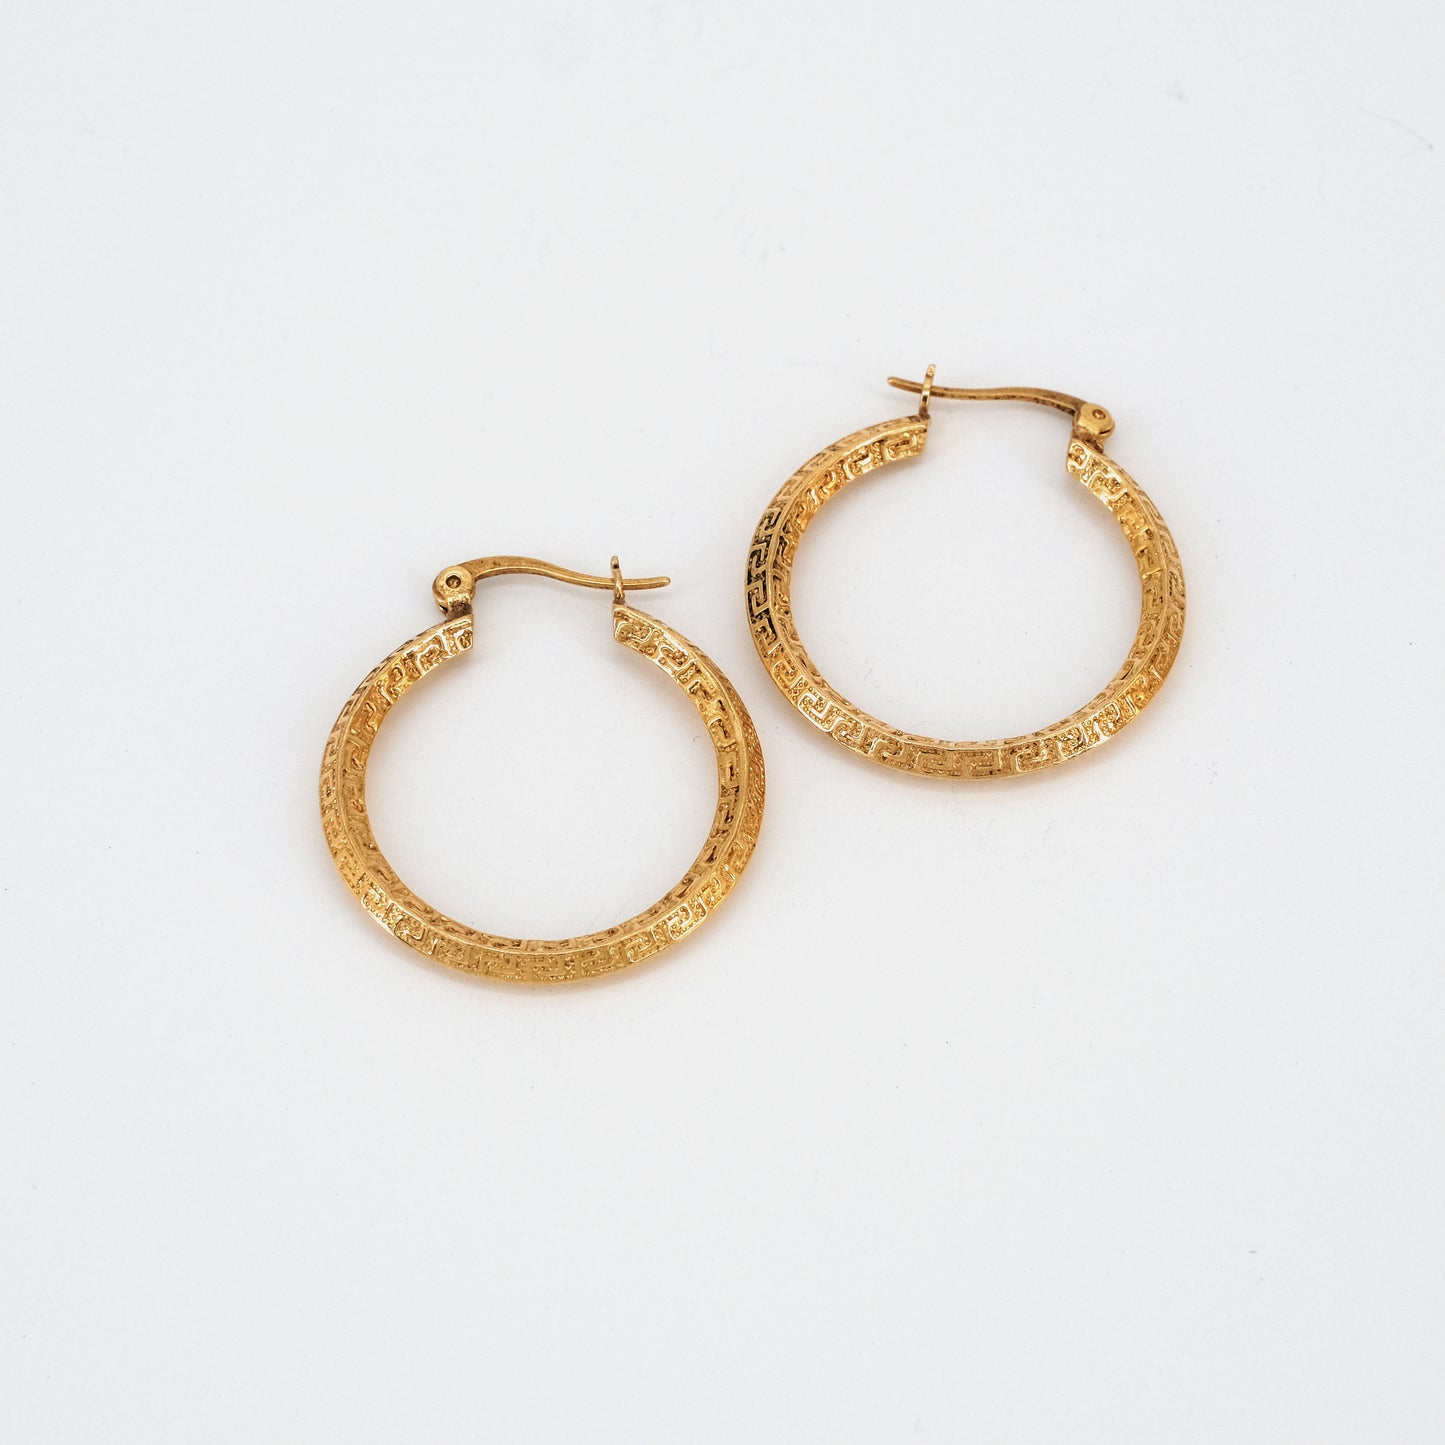 Lana earrings